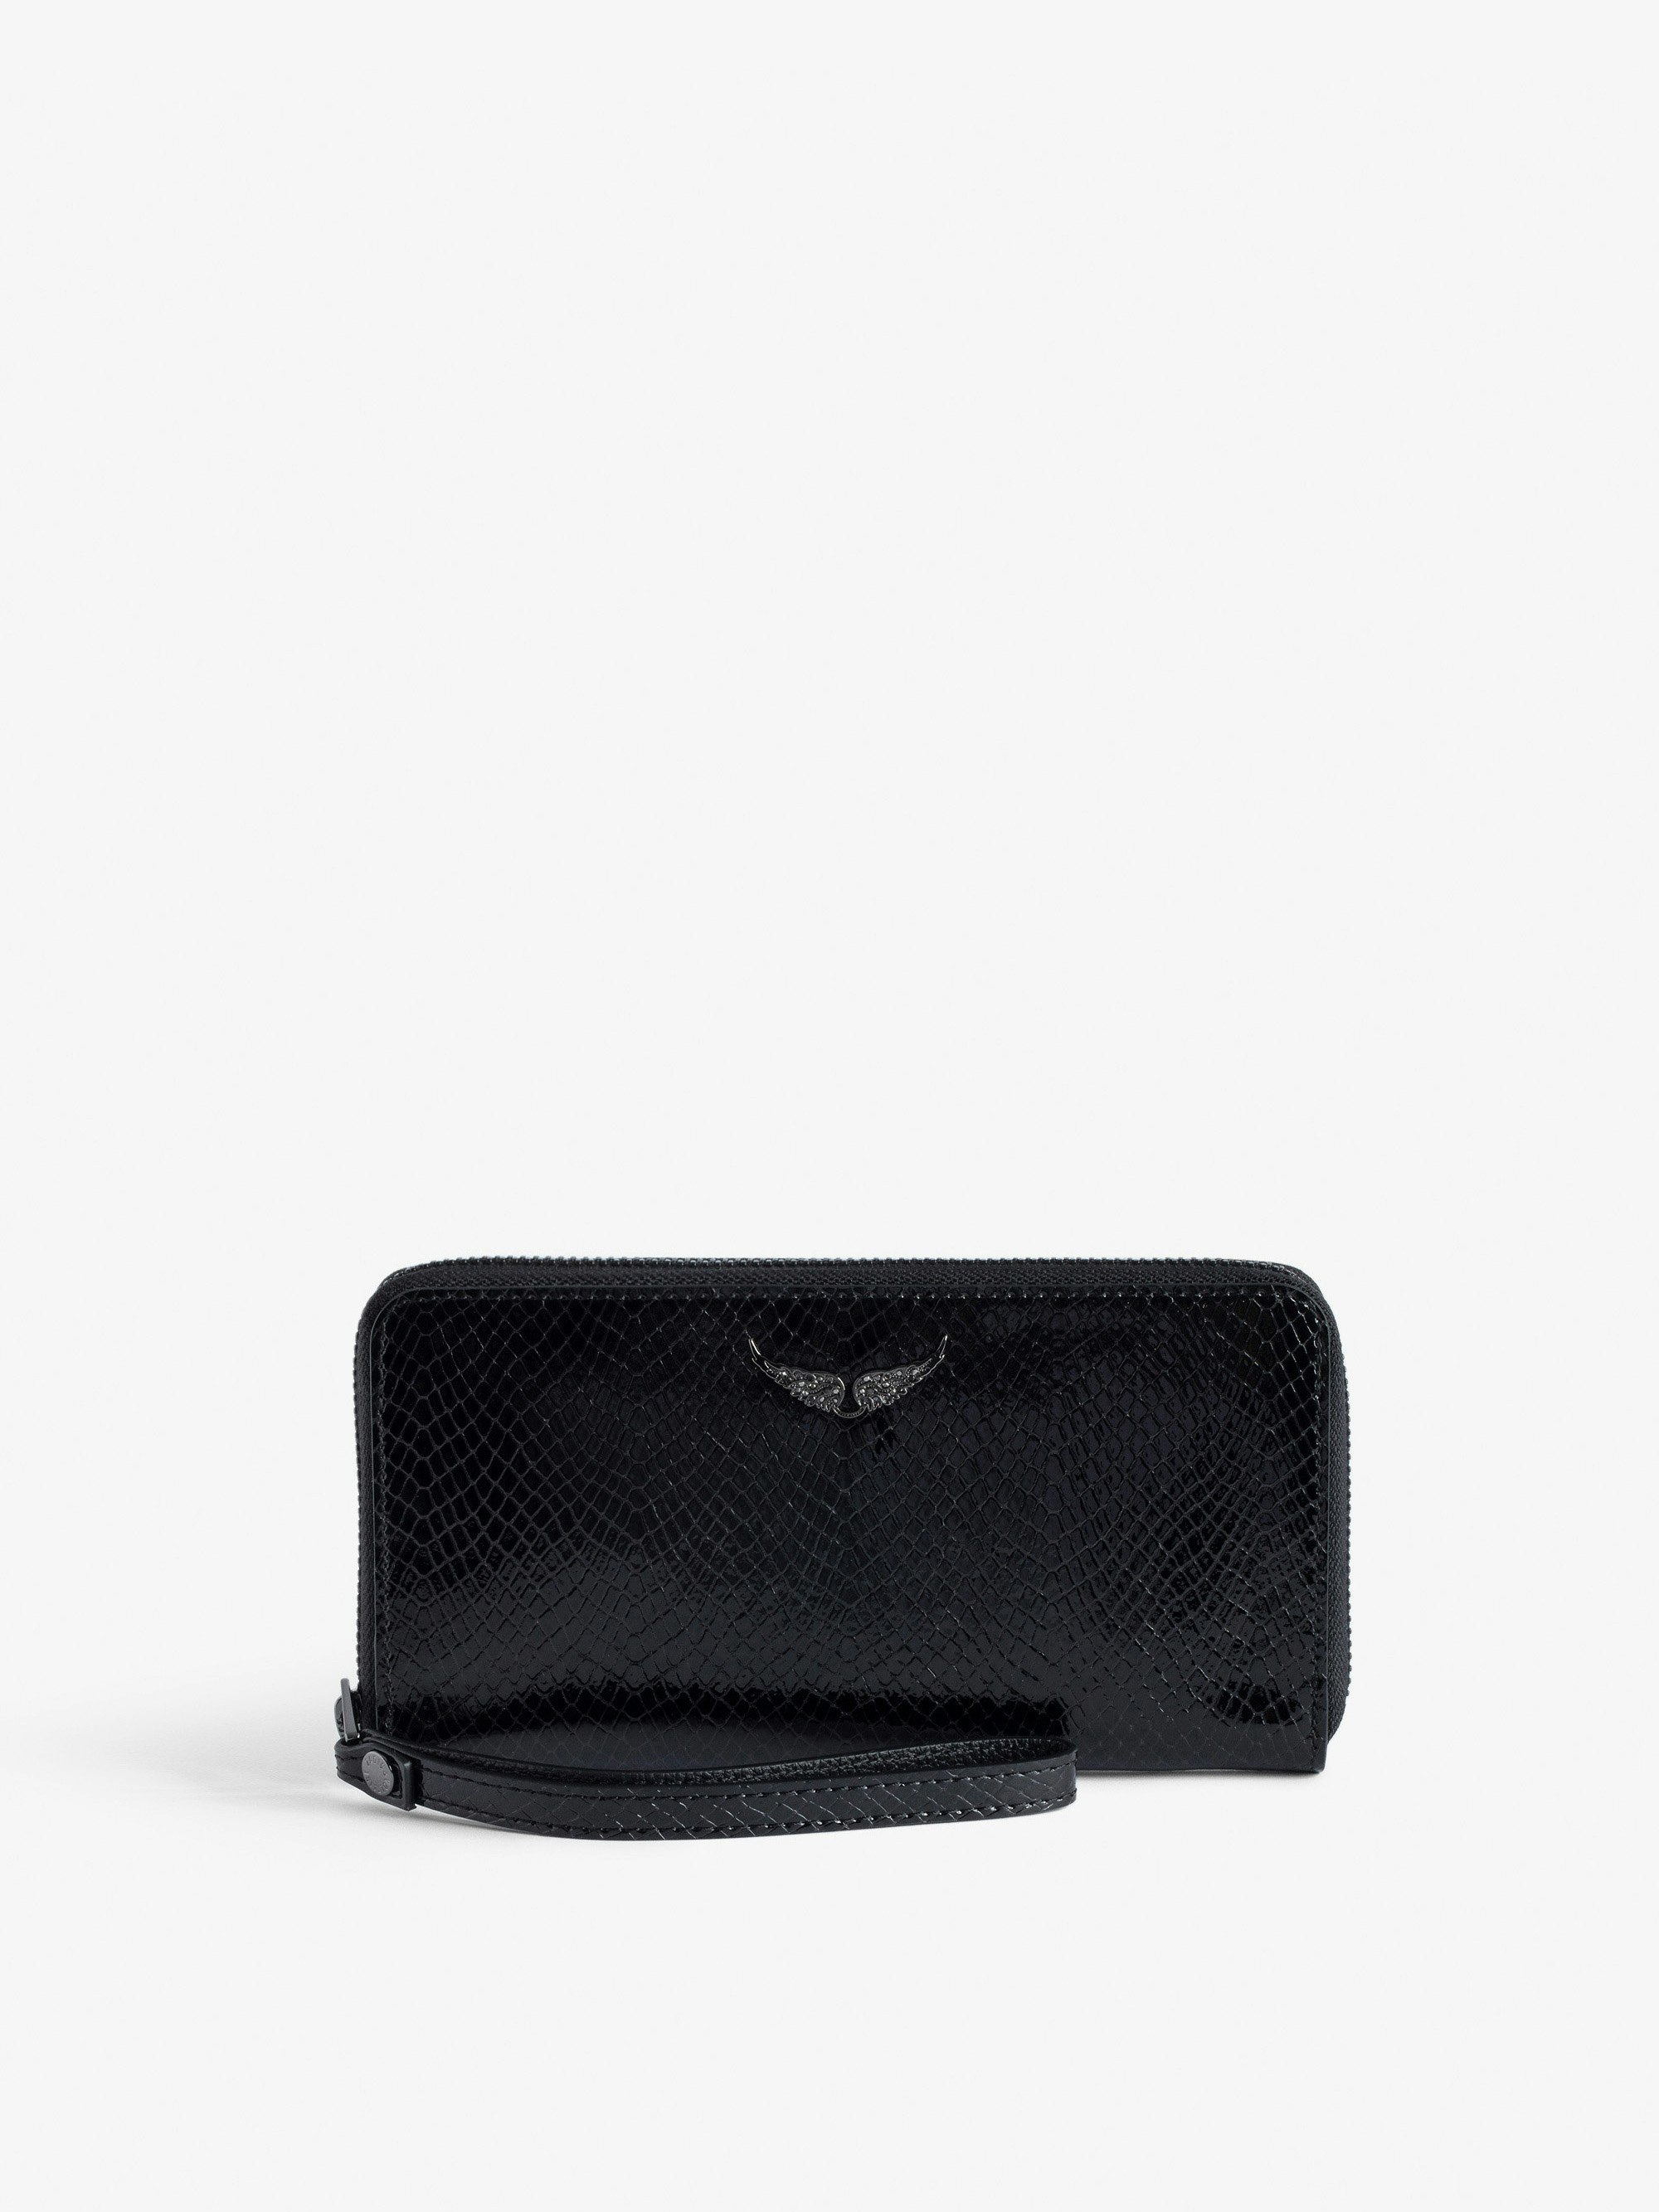 Brieftasche Compagnon Glossy Wild Geprägt - Brieftasche aus glänzendem Leder in Schwarz mit Phyton-Effekt und Flügel-Charm für Damen.